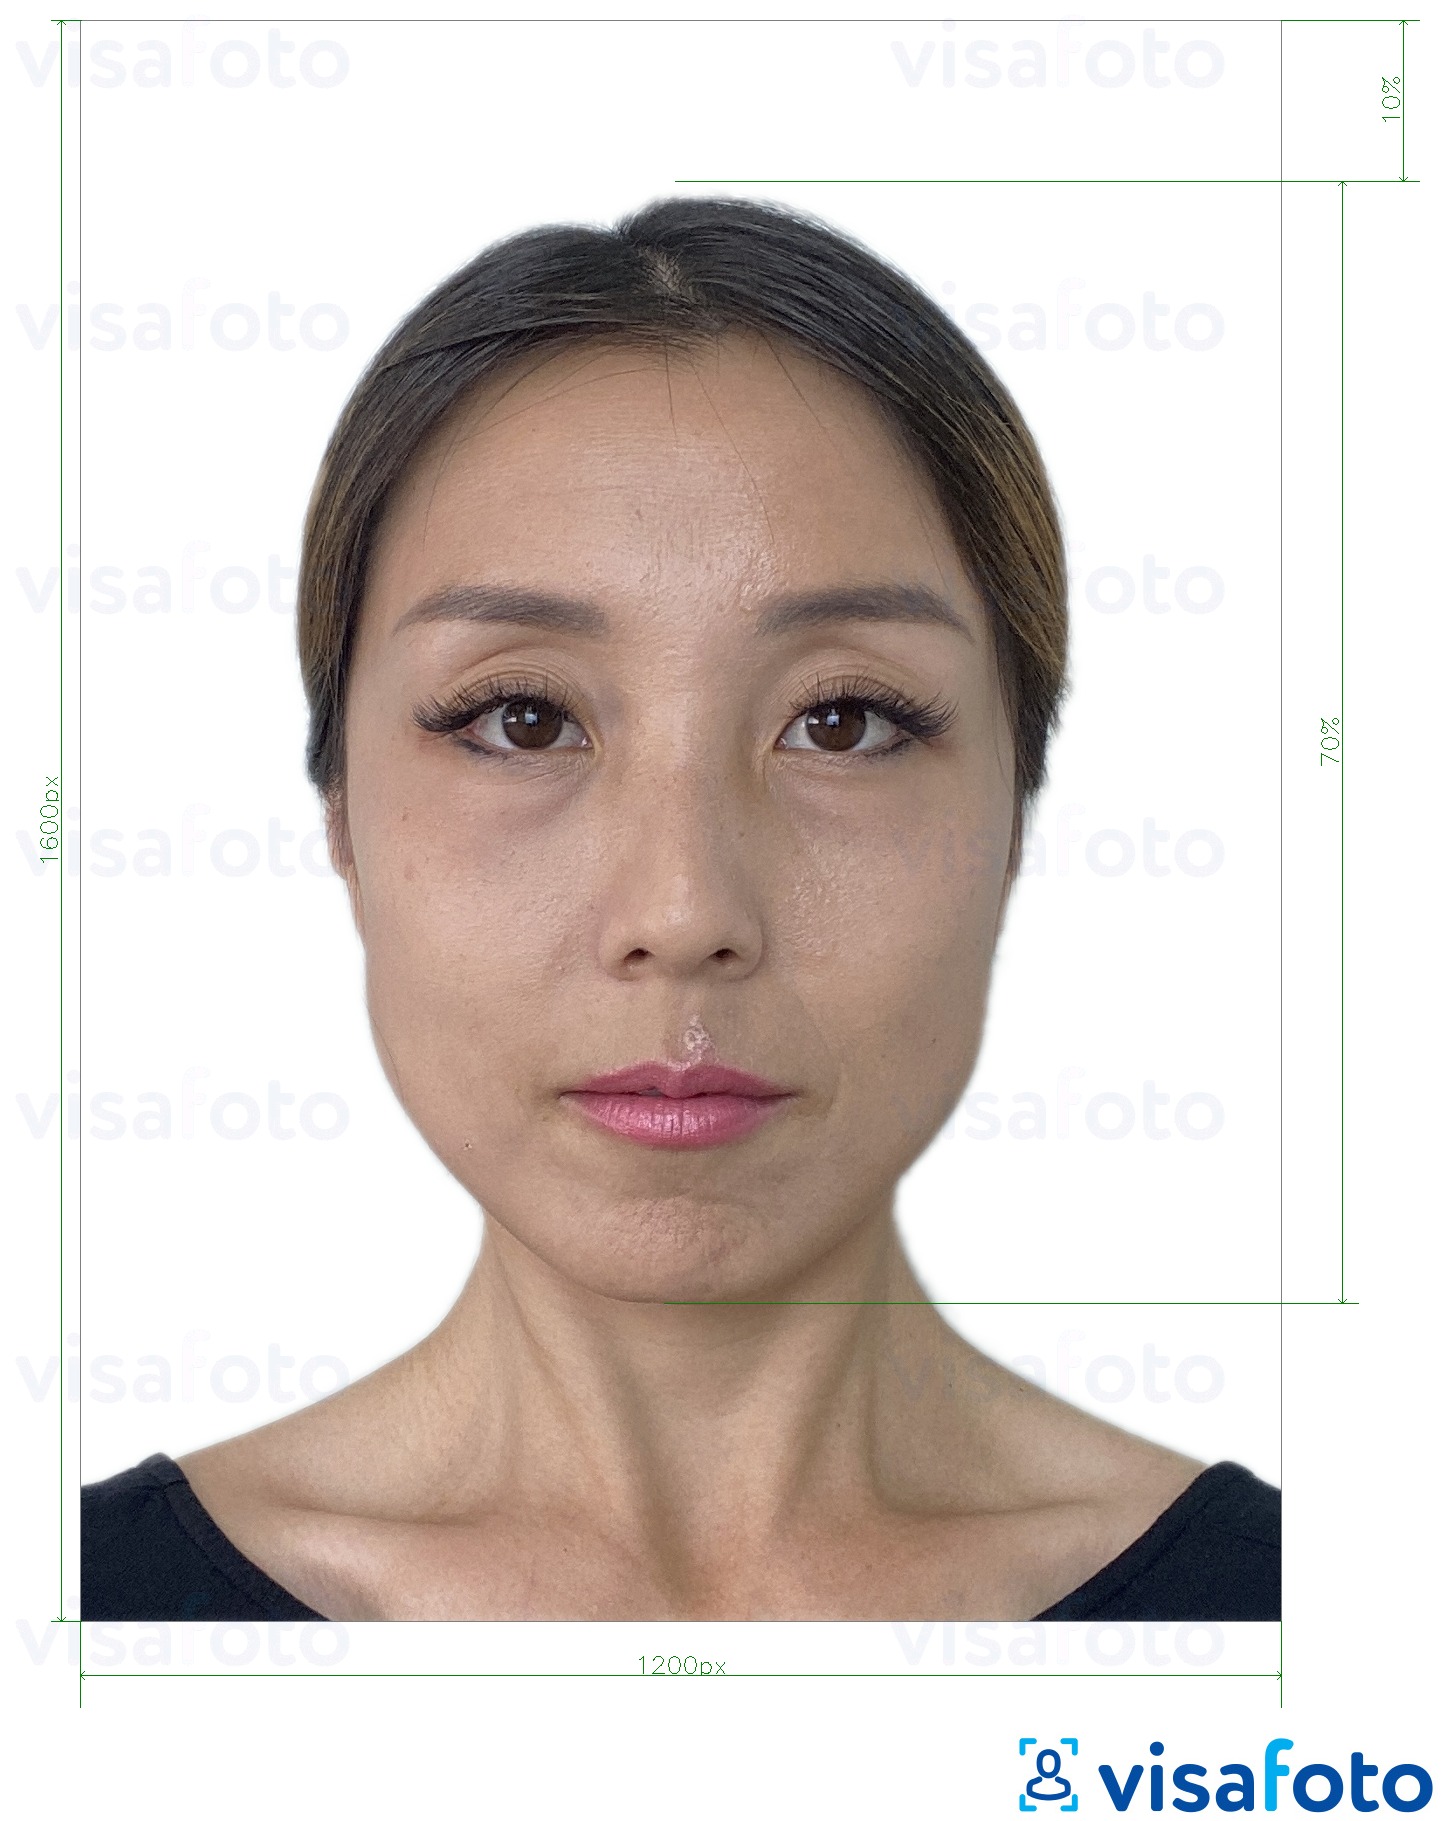 Contoh dari foto untuk E-visa online Hong Kong 1200x1600 piksel dengan ukuran spesifikasi yang tepat